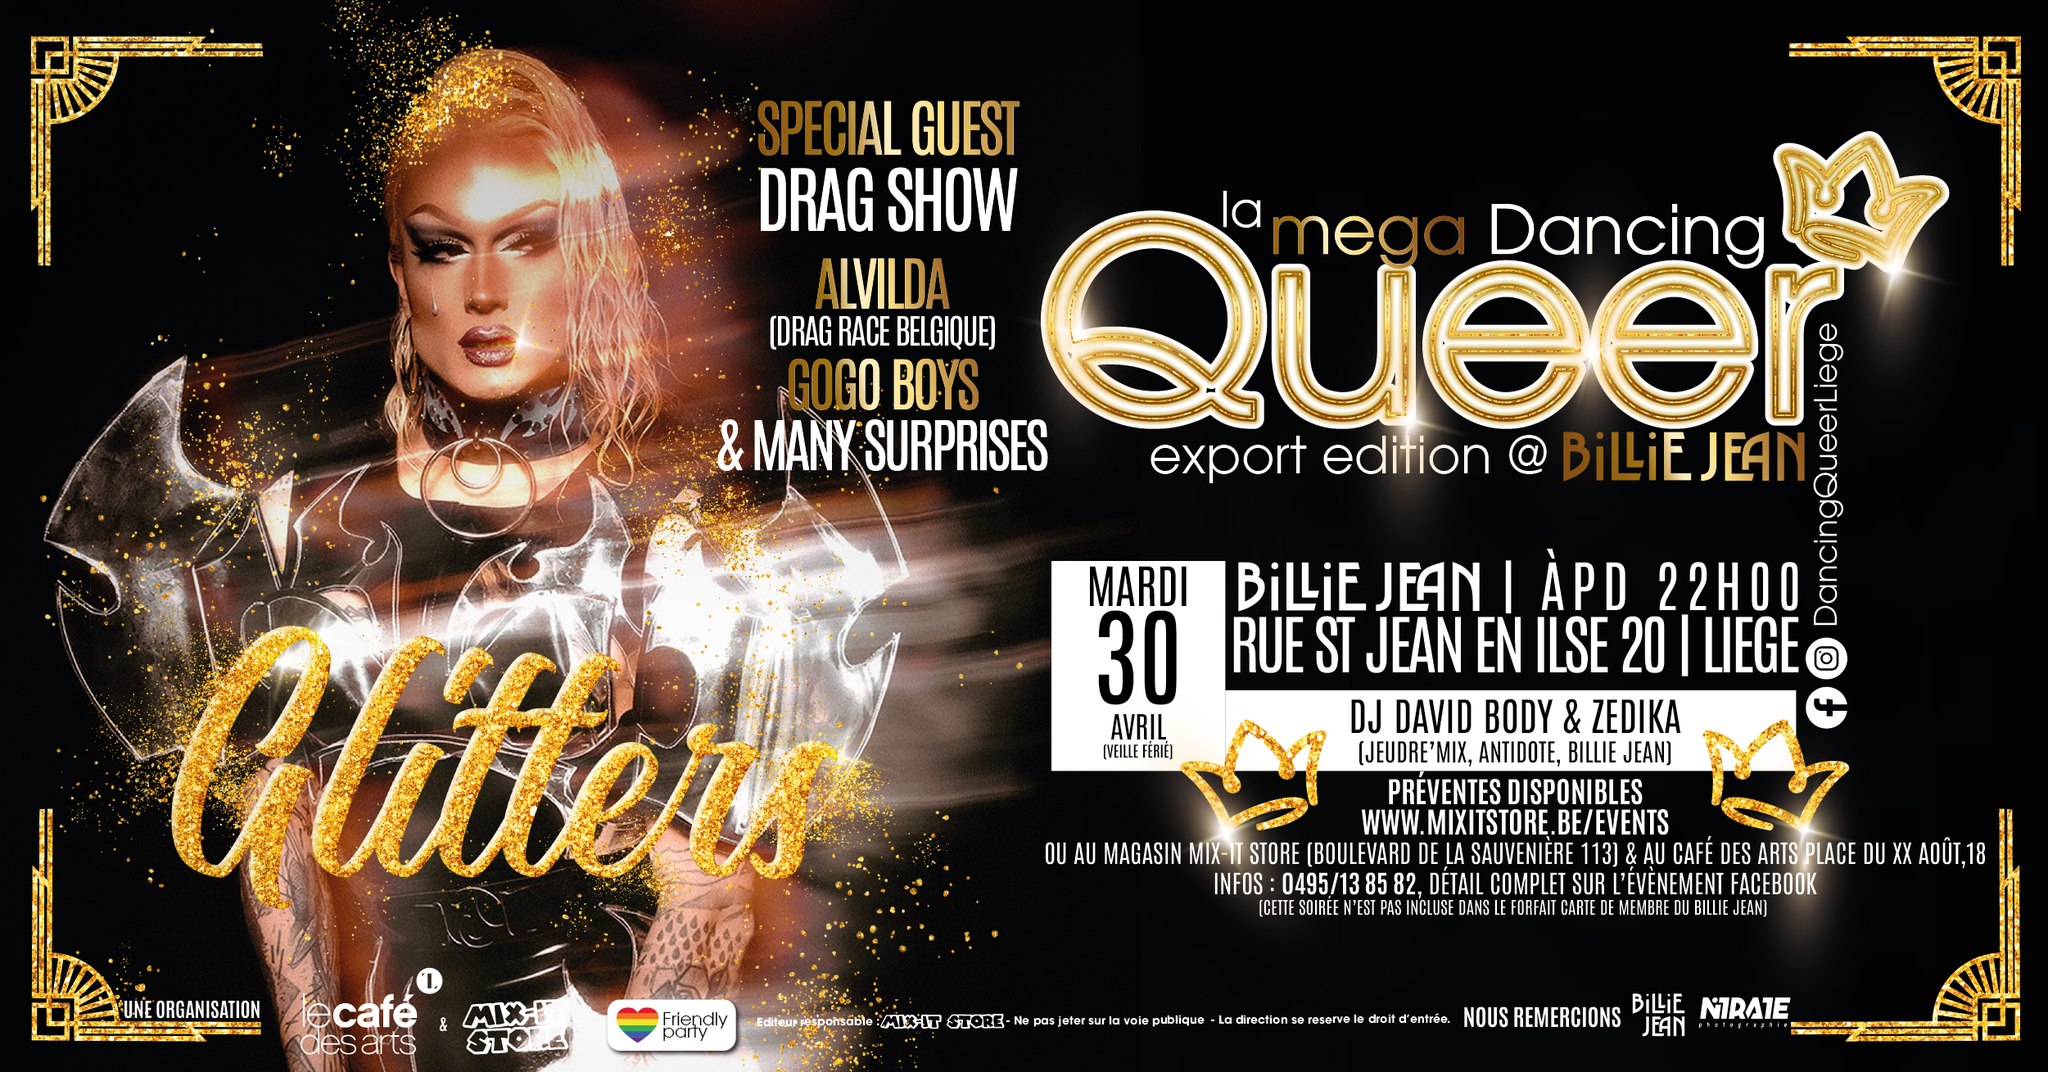 La Mega Dancing Queer - Glitters Edition @ Billie Jean - Veille de jour férié